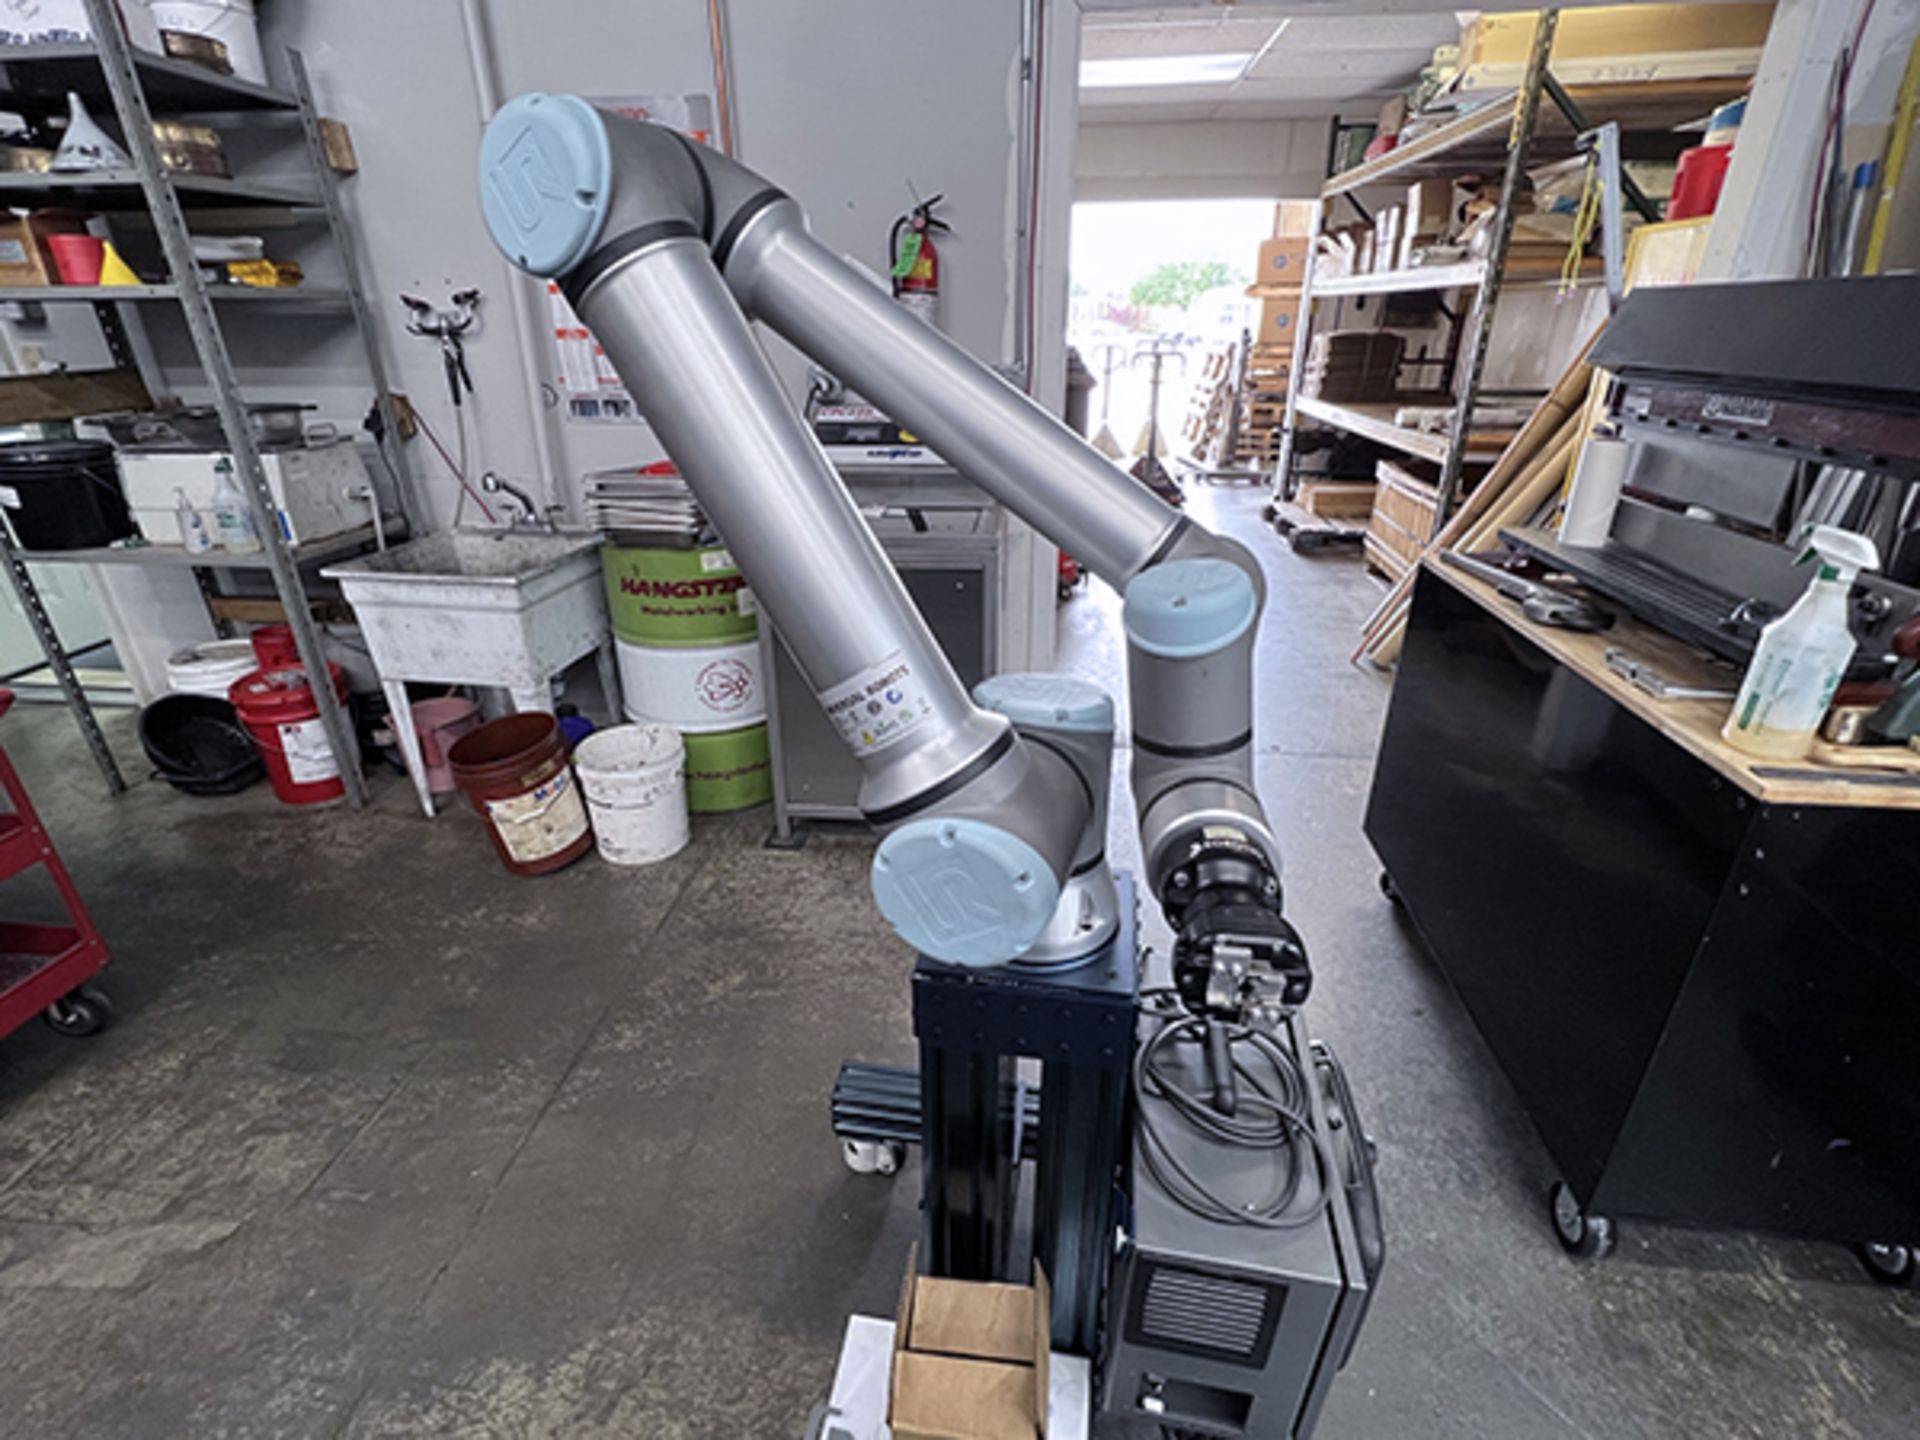 Universal Robot UR10e 6 Axis Robot (2019)